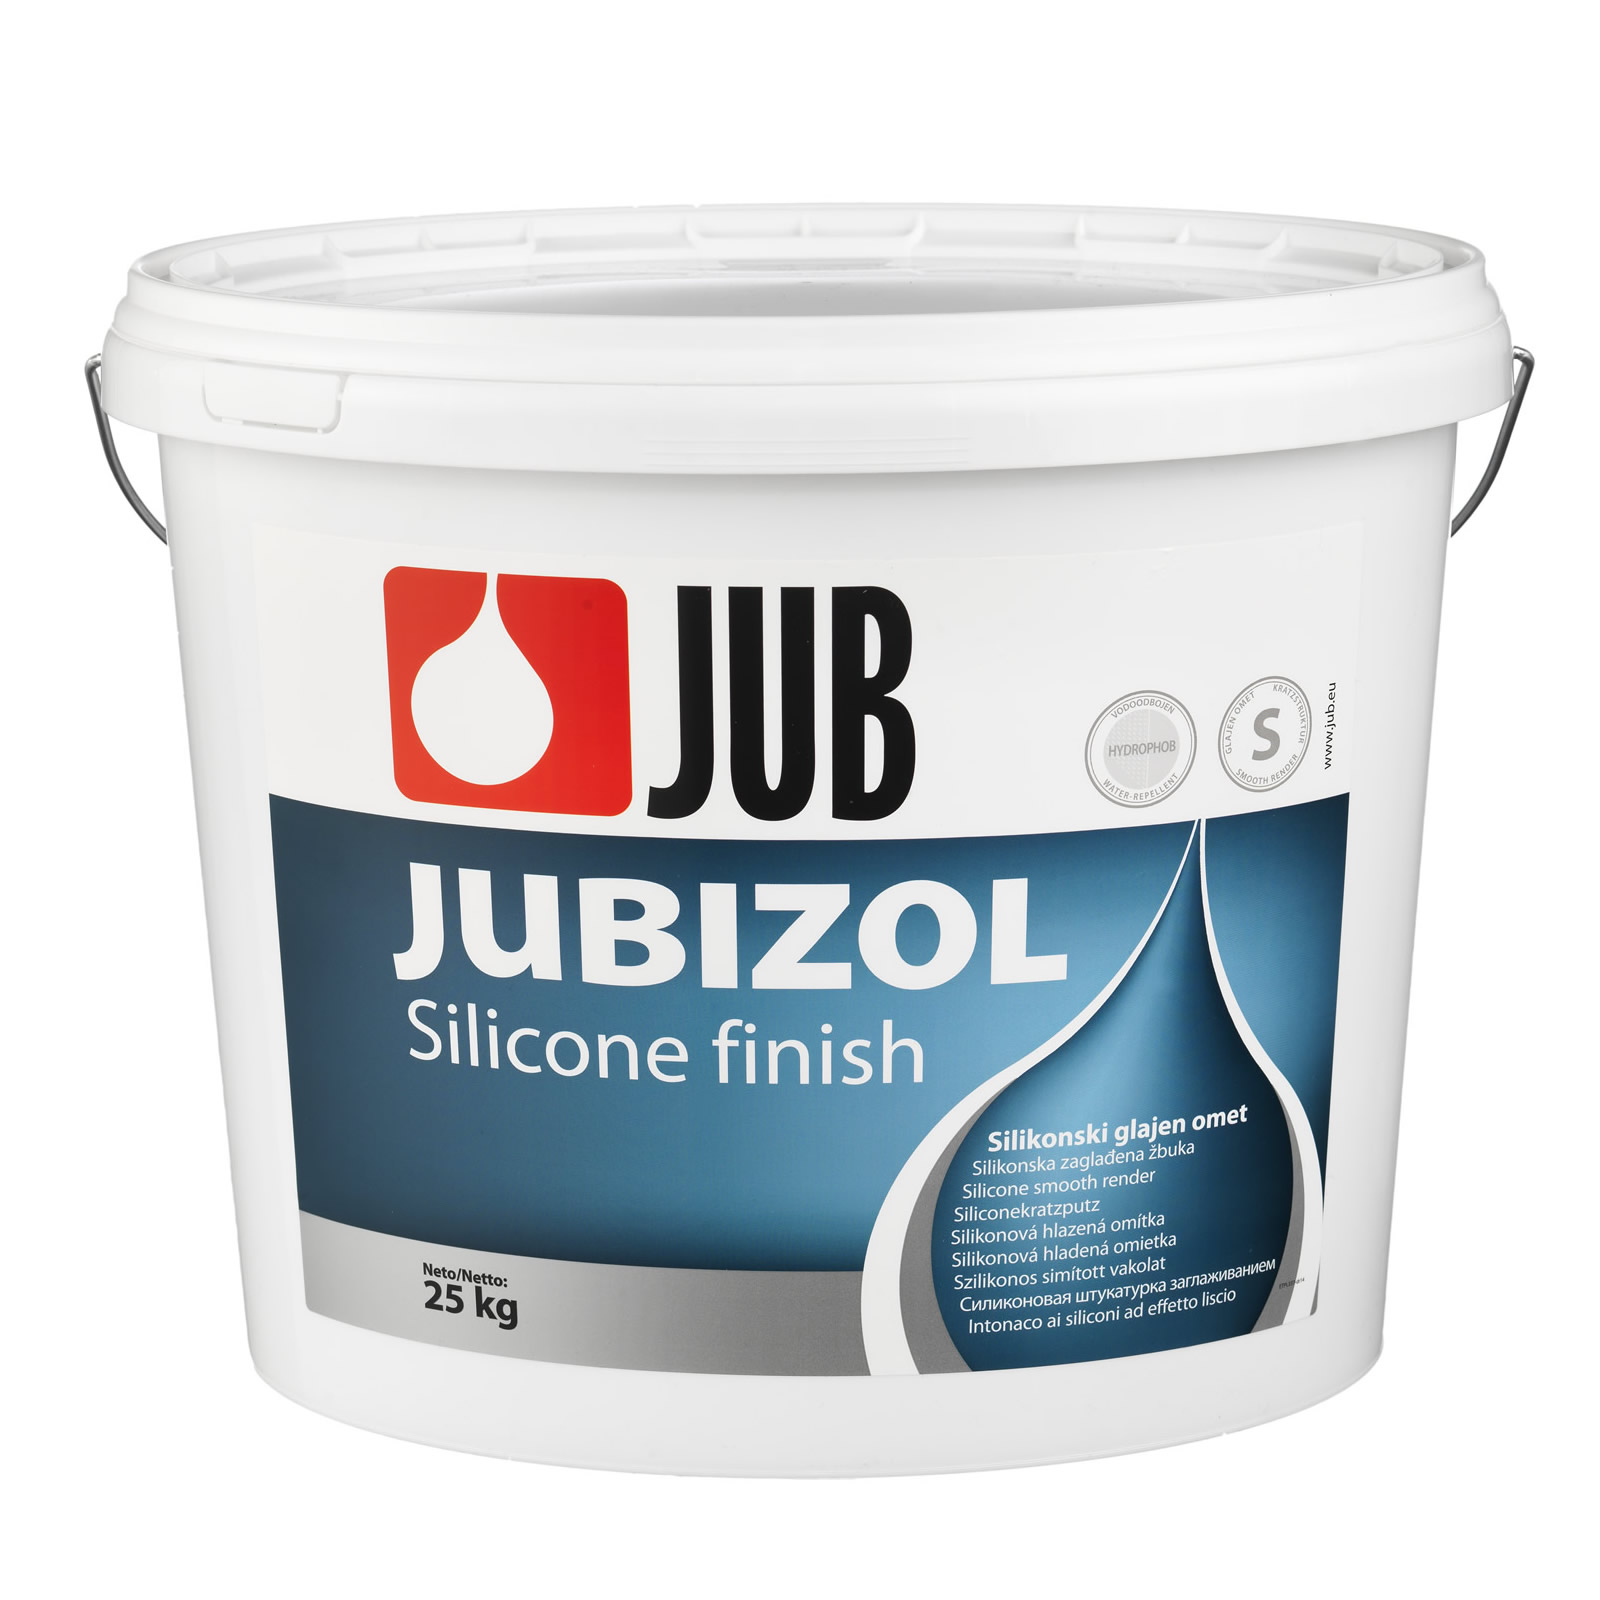 JUBIZOL Silicone Finish S 1.5 és 2.0 szilikonos simított vakolat